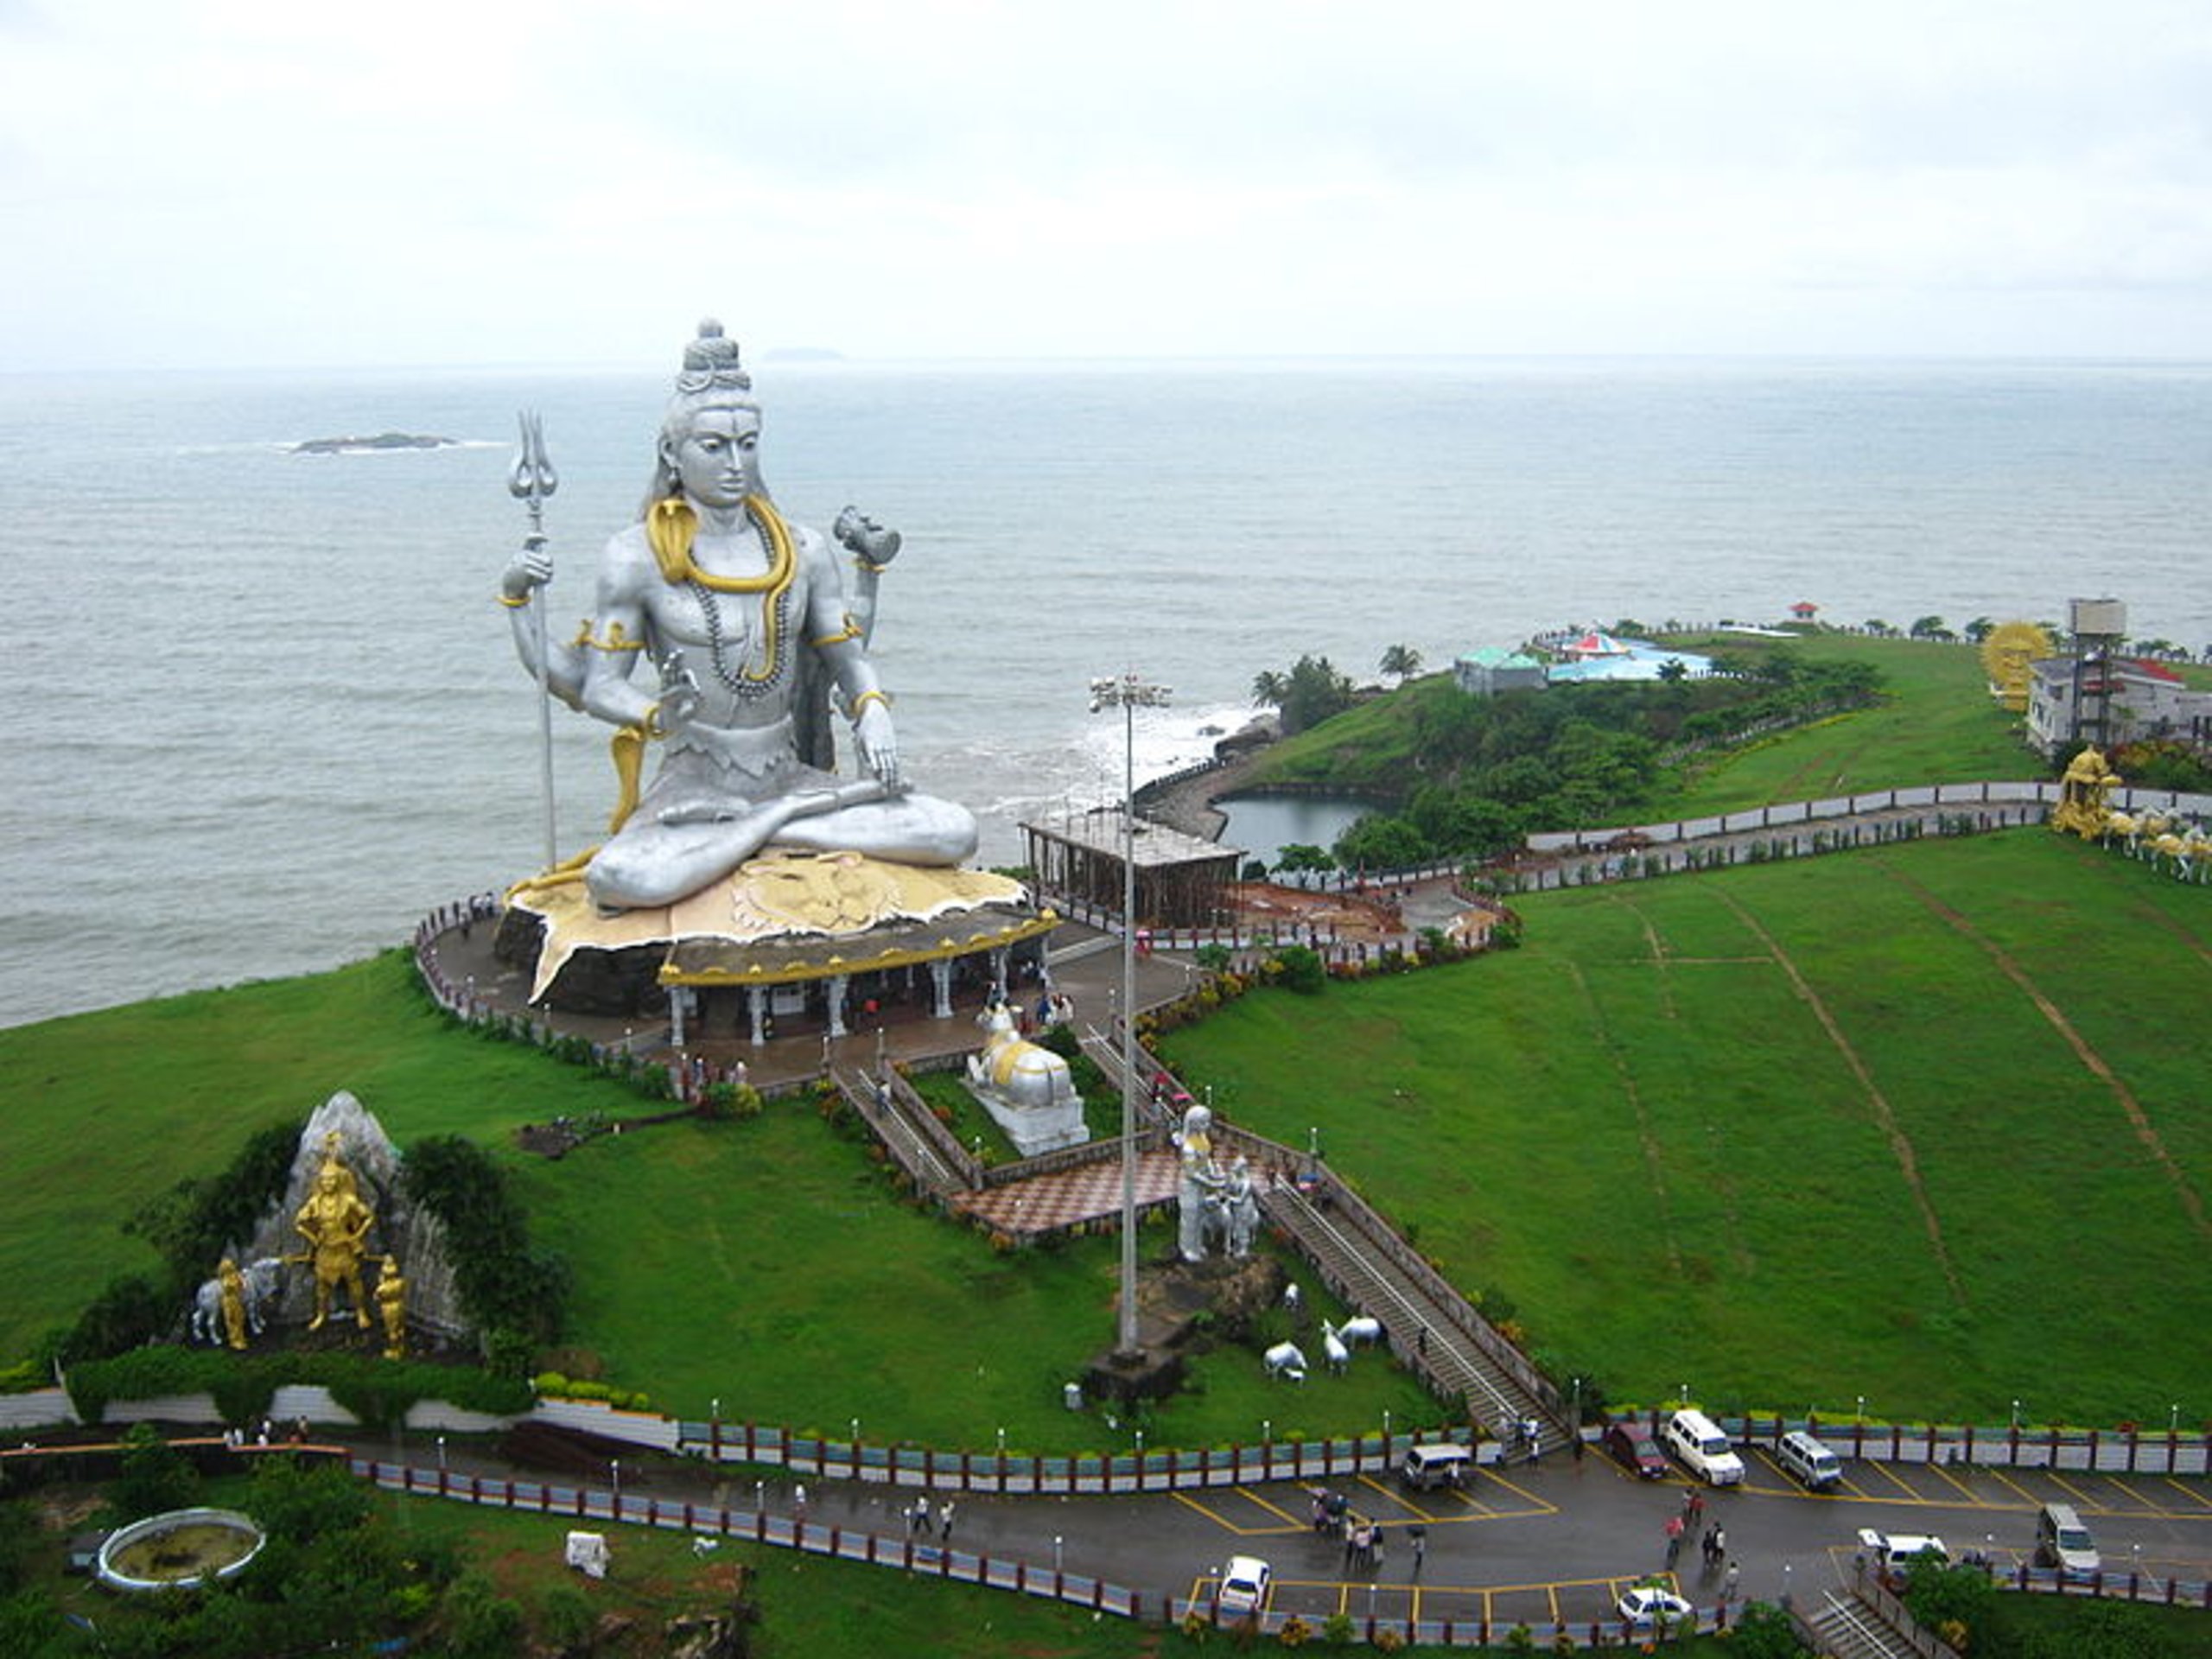 श्रीमुरुदेश्वर शिव मंदिर-सागर तीरे विश्व का सबसे ऊंचा प्राचीन मंदिर, जानिए क्यों है विशेष